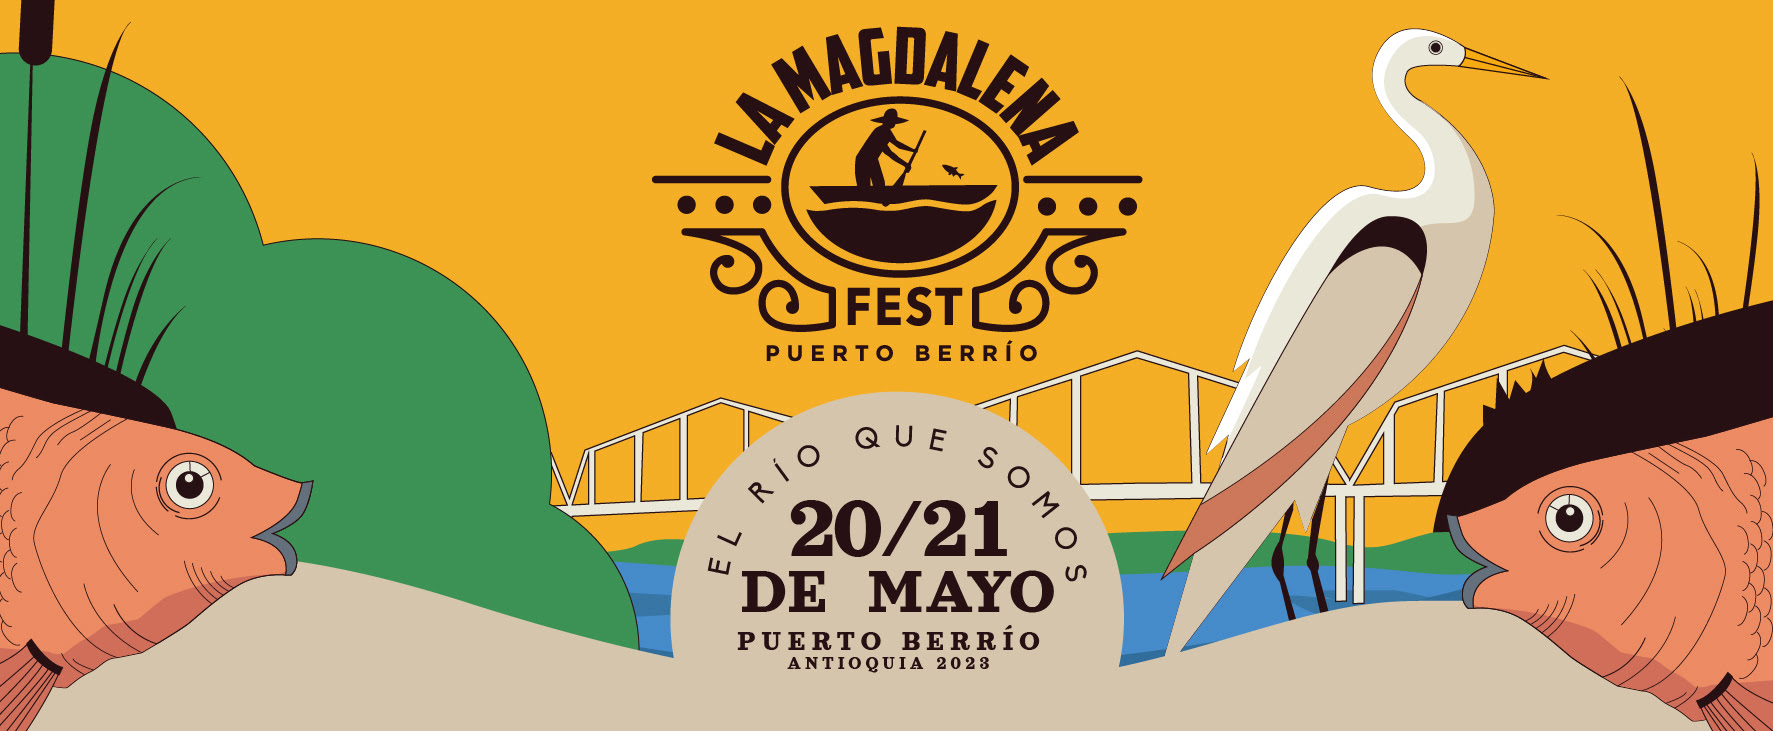 Llega la segunda edición de La Magdalena Fest 2023 en Puerto Berrio #Elríoquesomos